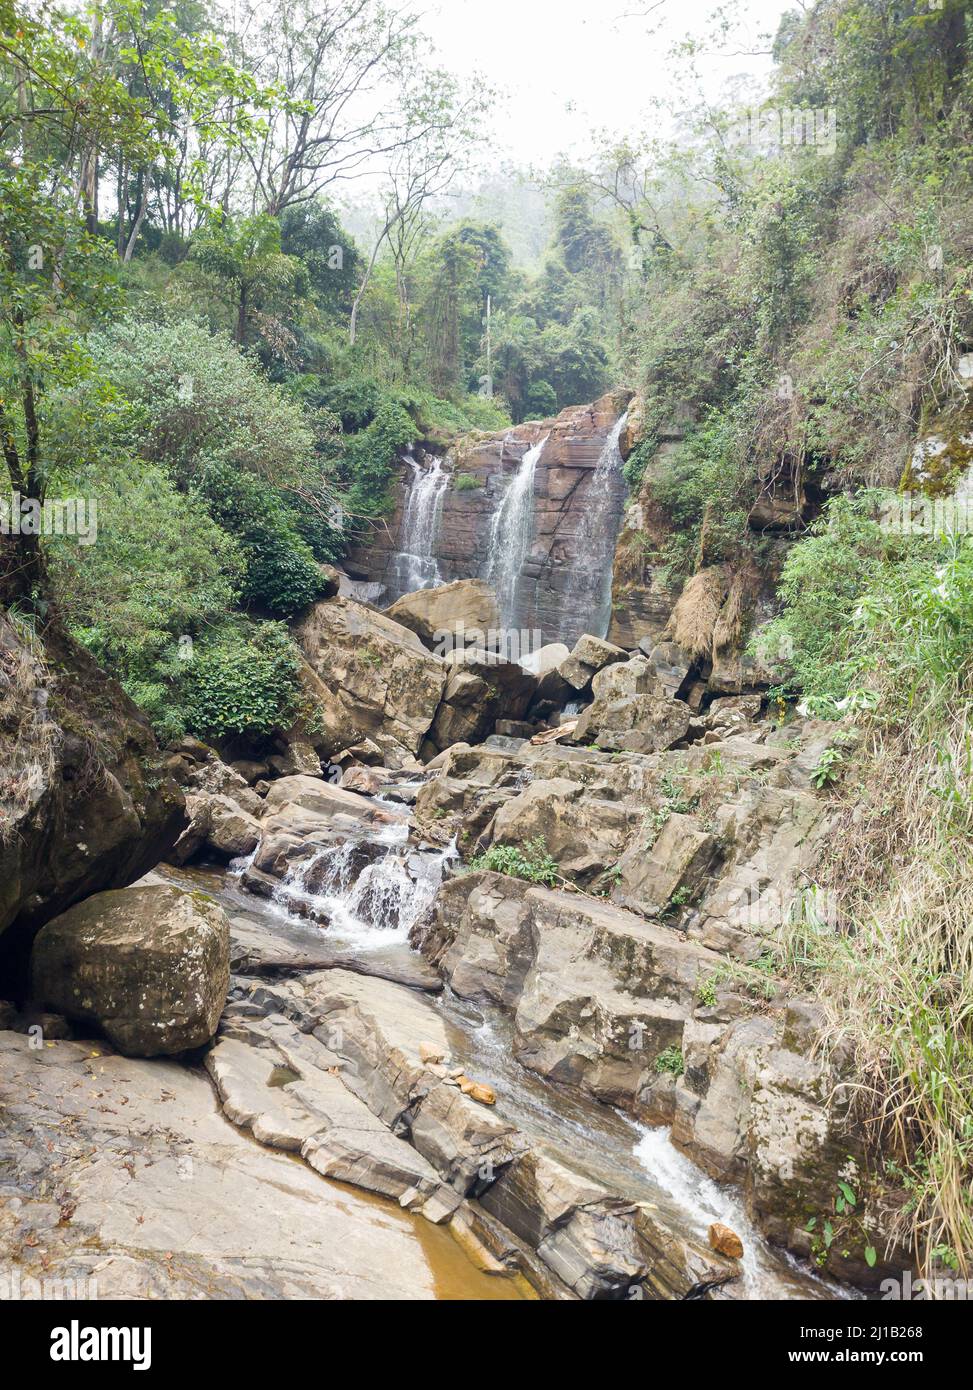 chutes de ramboda, photo prise en saison sèche, chutes d'eau au sri lanka, situé au col de ramboda Banque D'Images